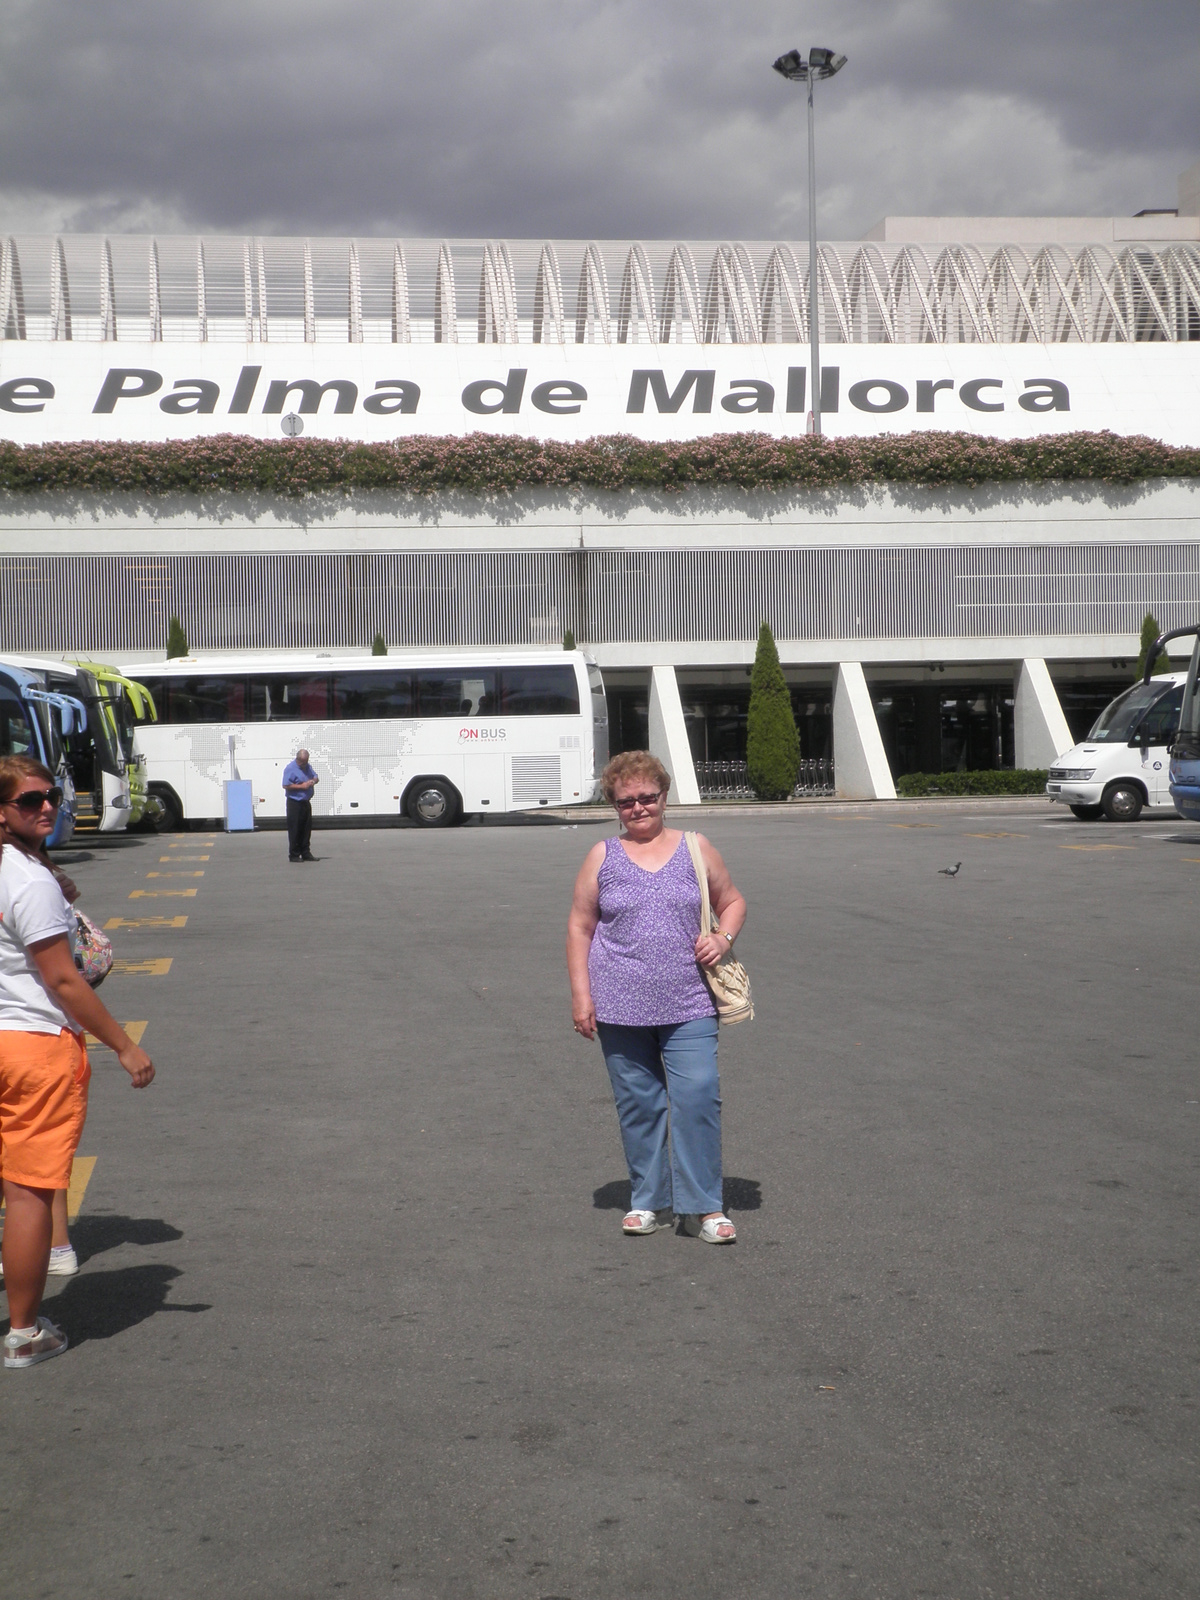 PALMA DE MALLORCA